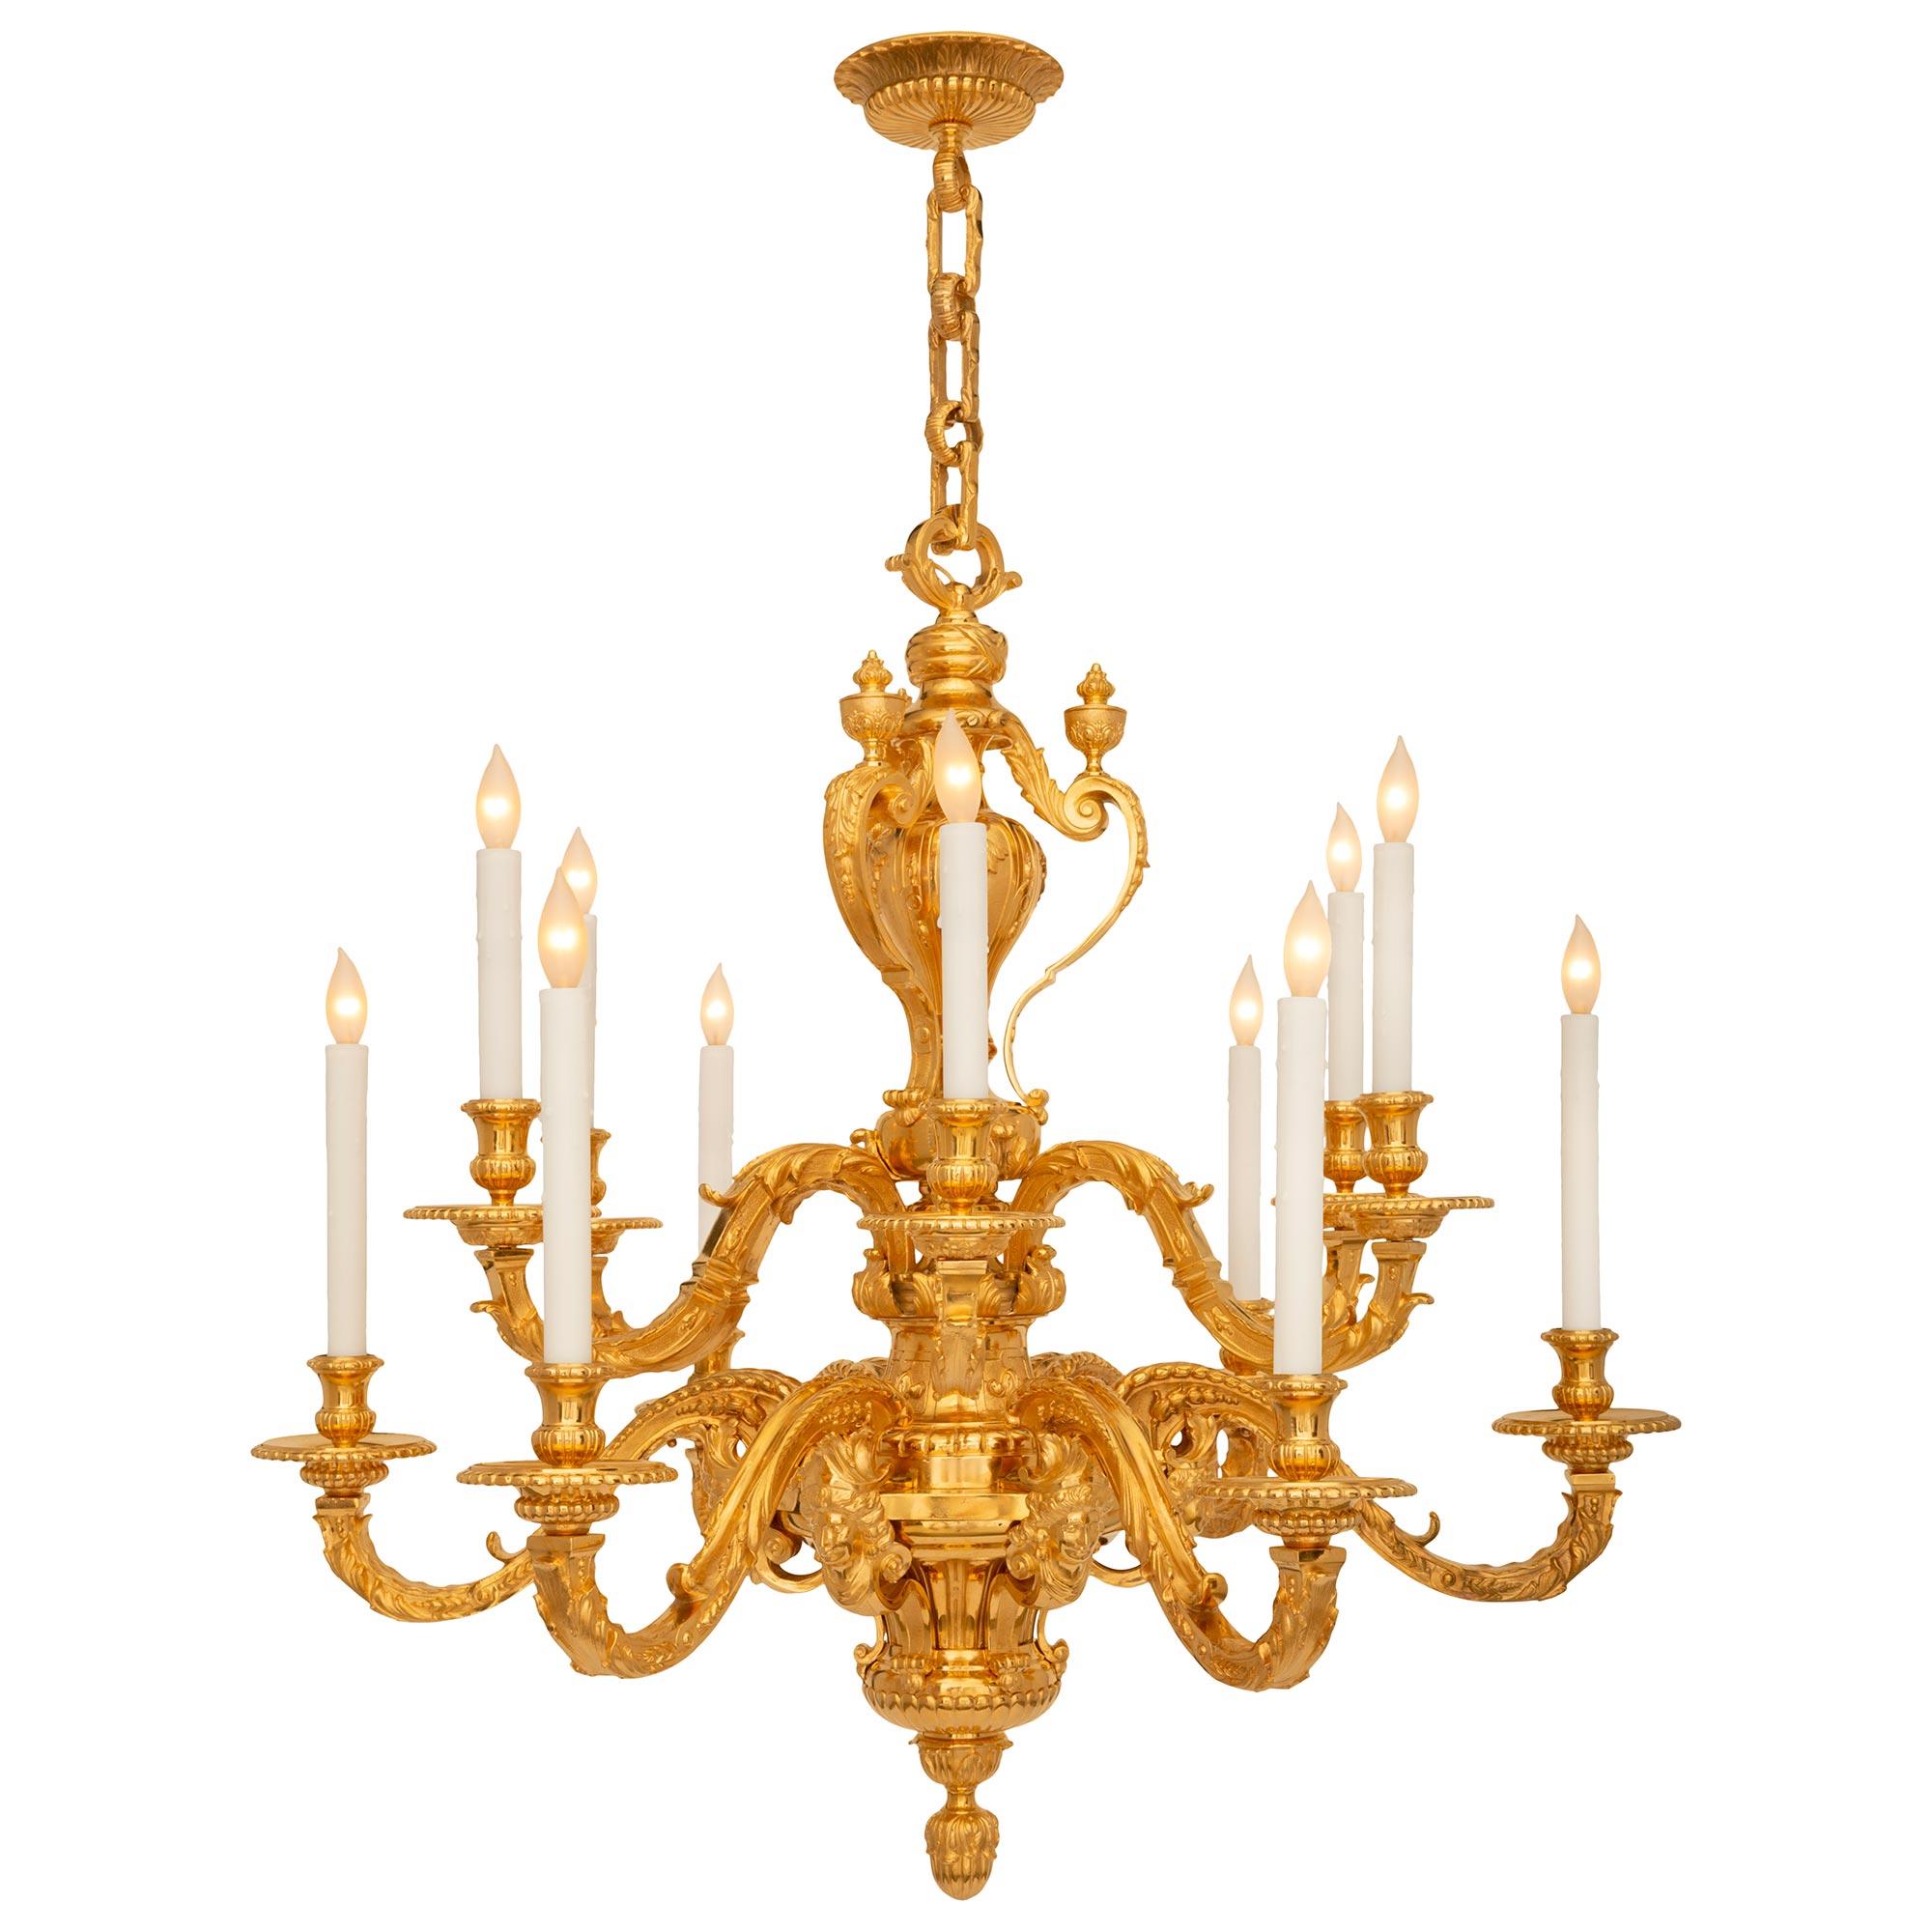 Impressionnant lustre en bronze doré de style Louis XIV du XIXe siècle. Le lustre à douze bras est centré par un remarquable fleuron inférieur en forme de feuillage, sous le corps cannelé et élégamment courbé avec des mouvements de volutes